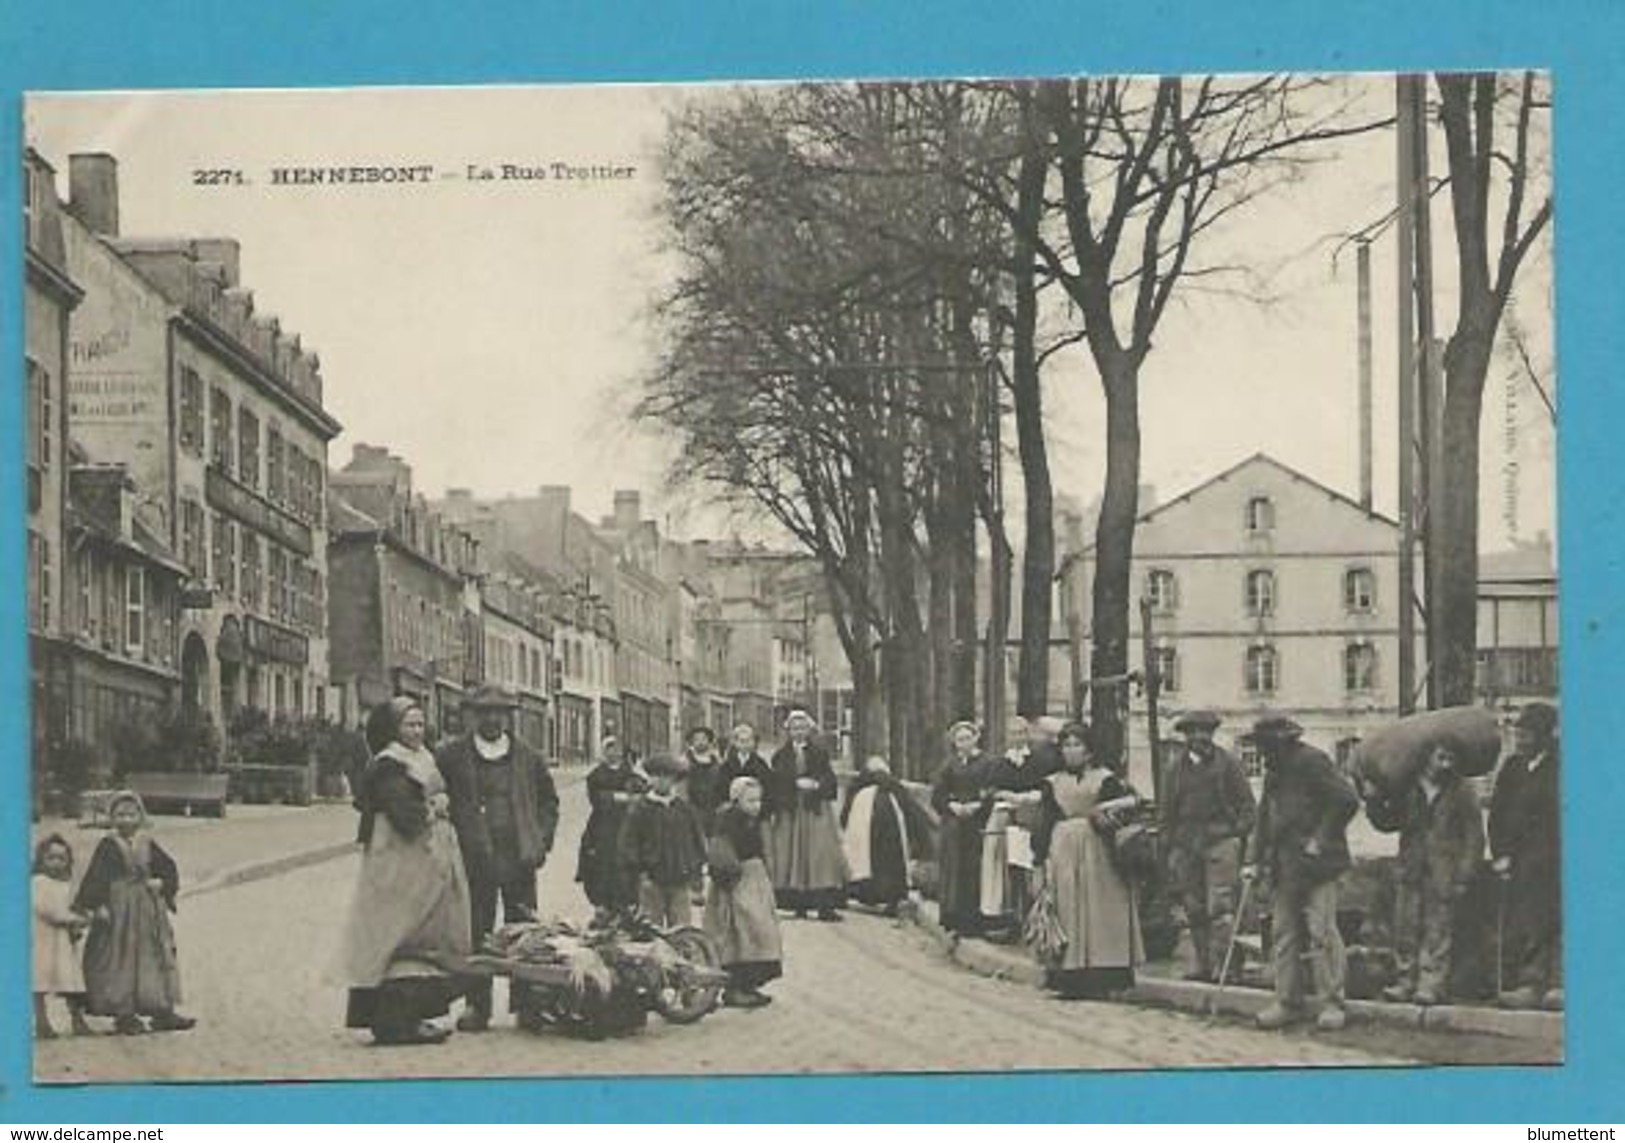 CPA 2271 - Métier Marchands Ambulants Le Marché Rue Trottier HENNEBONT 56 - Hennebont